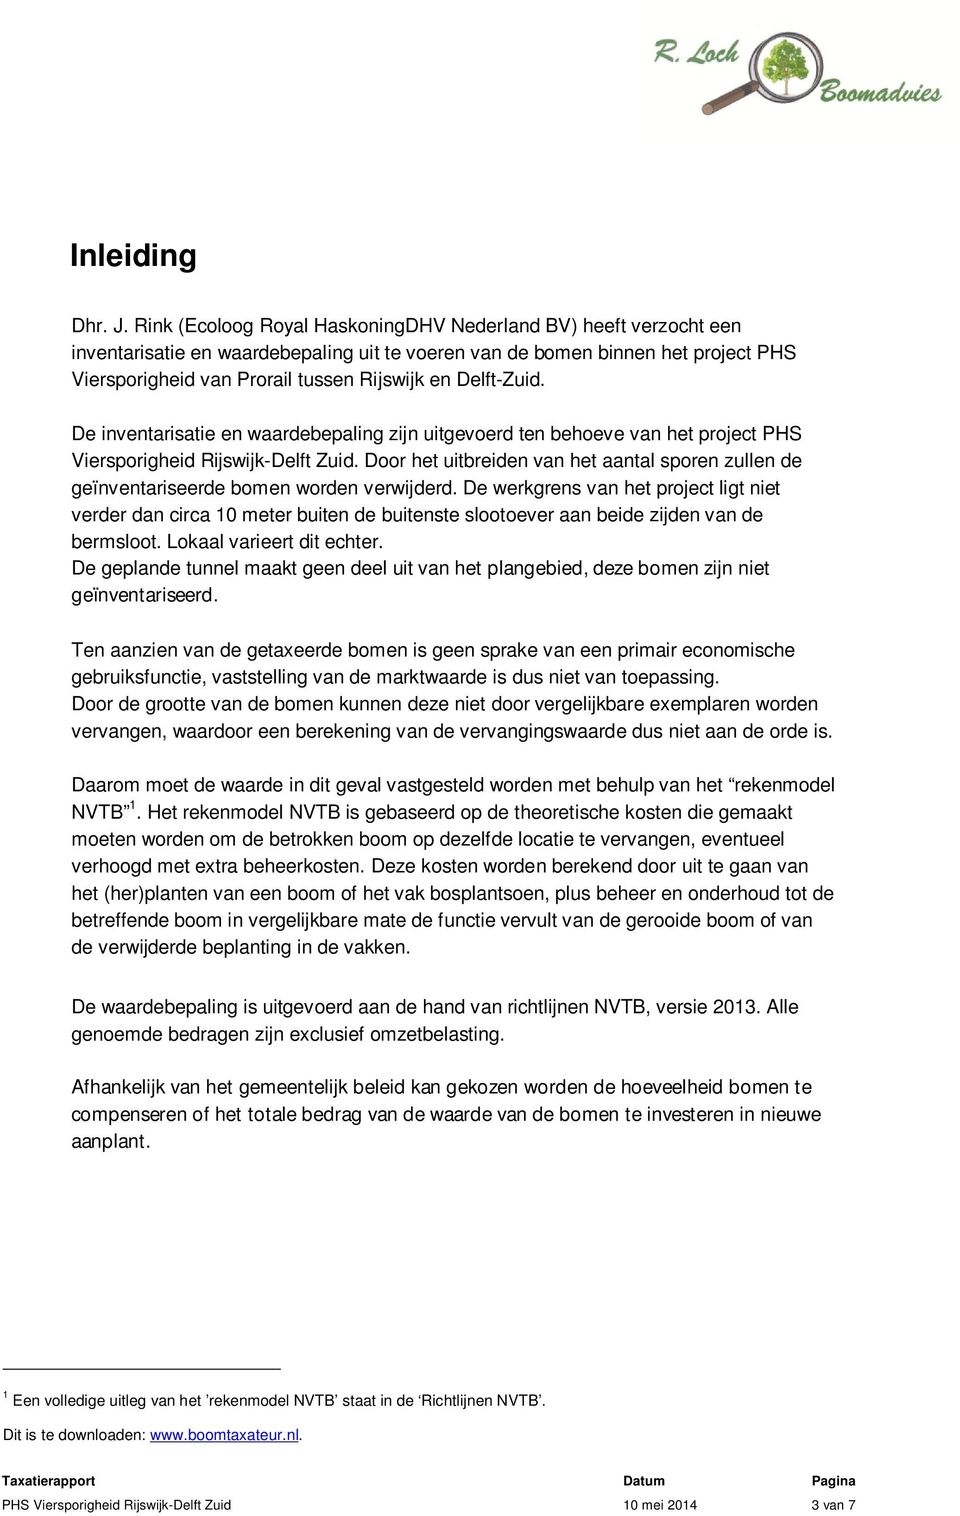 Delft-Zuid. De inventarisatie en waardebepaling zijn uitgevoerd ten behoeve van het project PHS Viersporigheid Rijswijk-Delft Zuid.